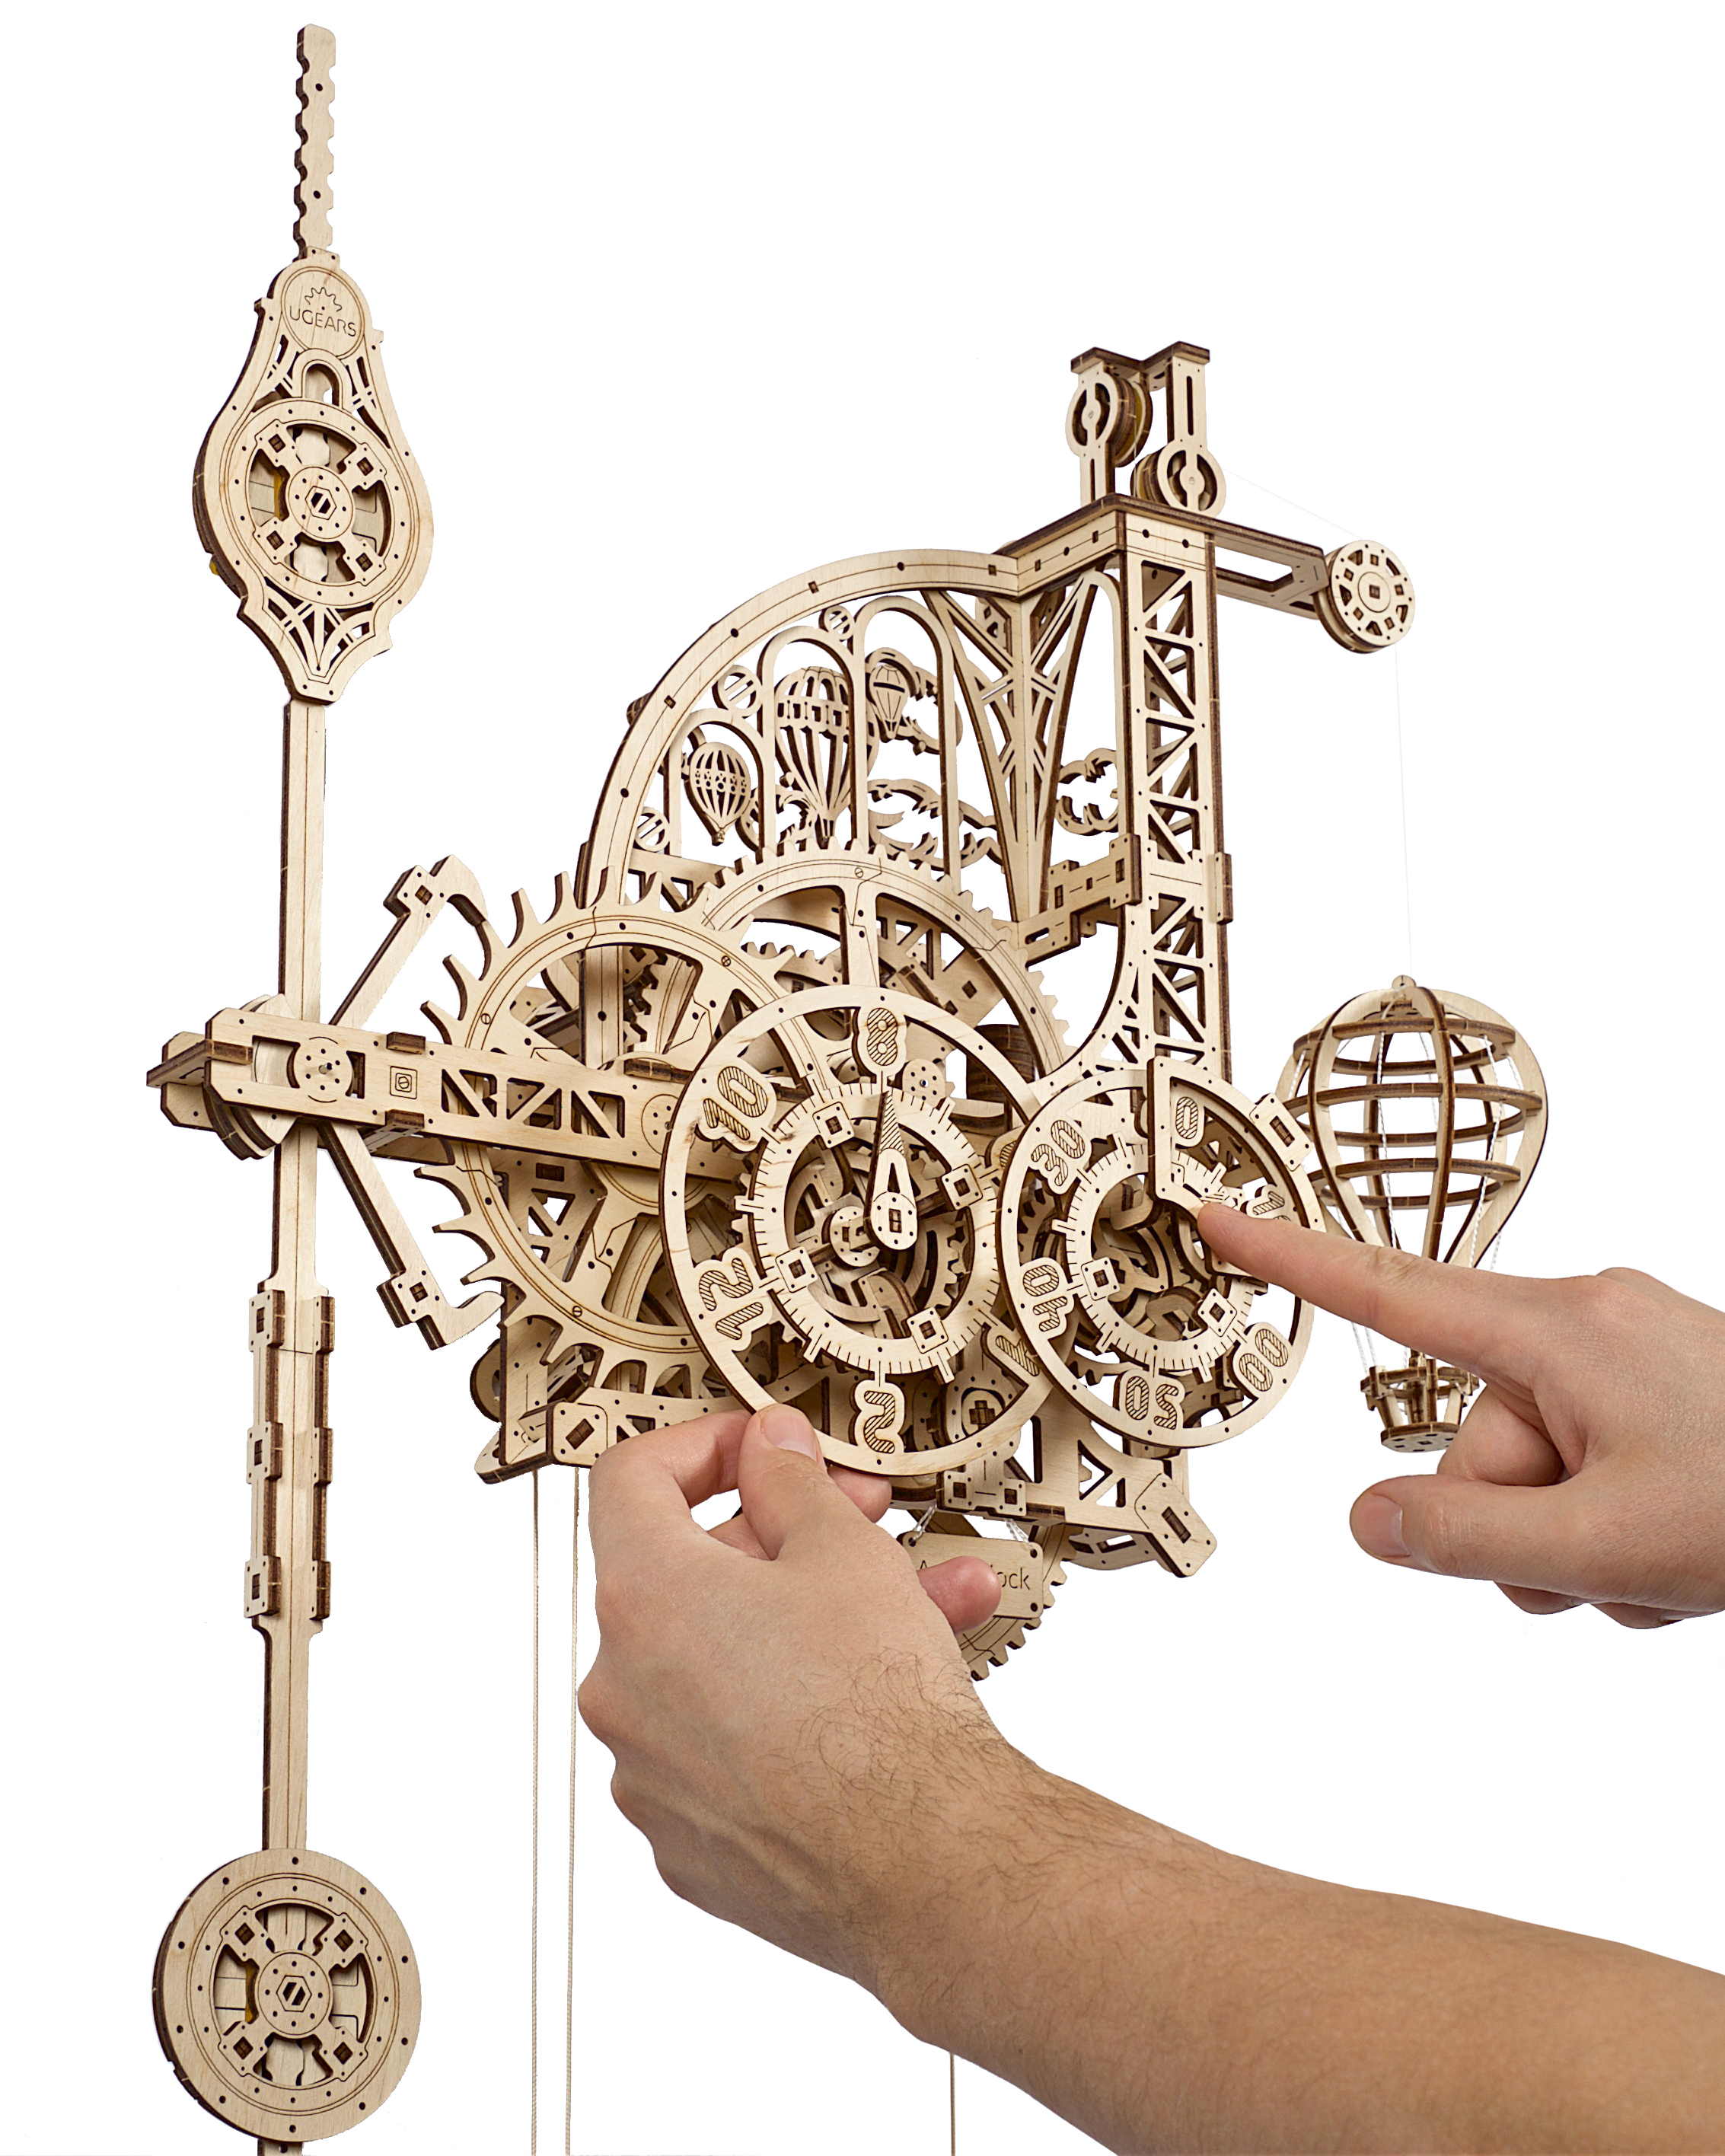 3D-Holzpuzzle Wanduhr mit Pendel